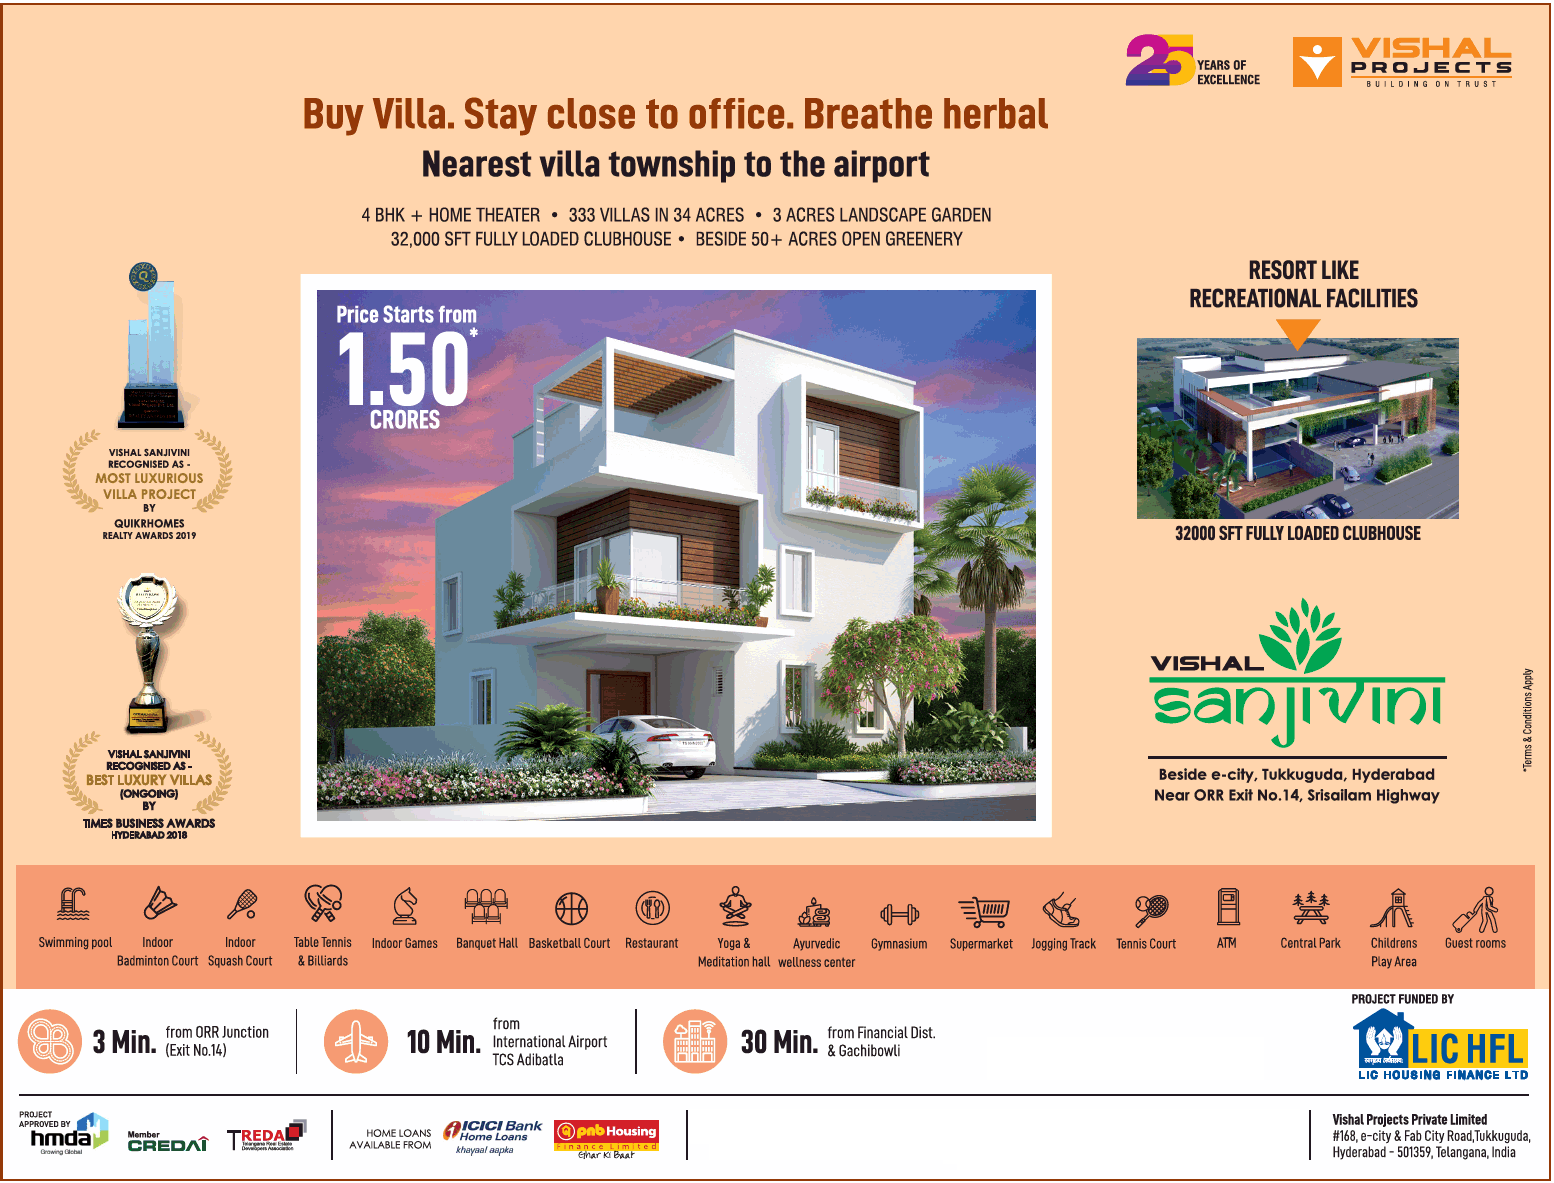 Buy villa at Vishal Sanjivini, Hyderabad and breathe herbal